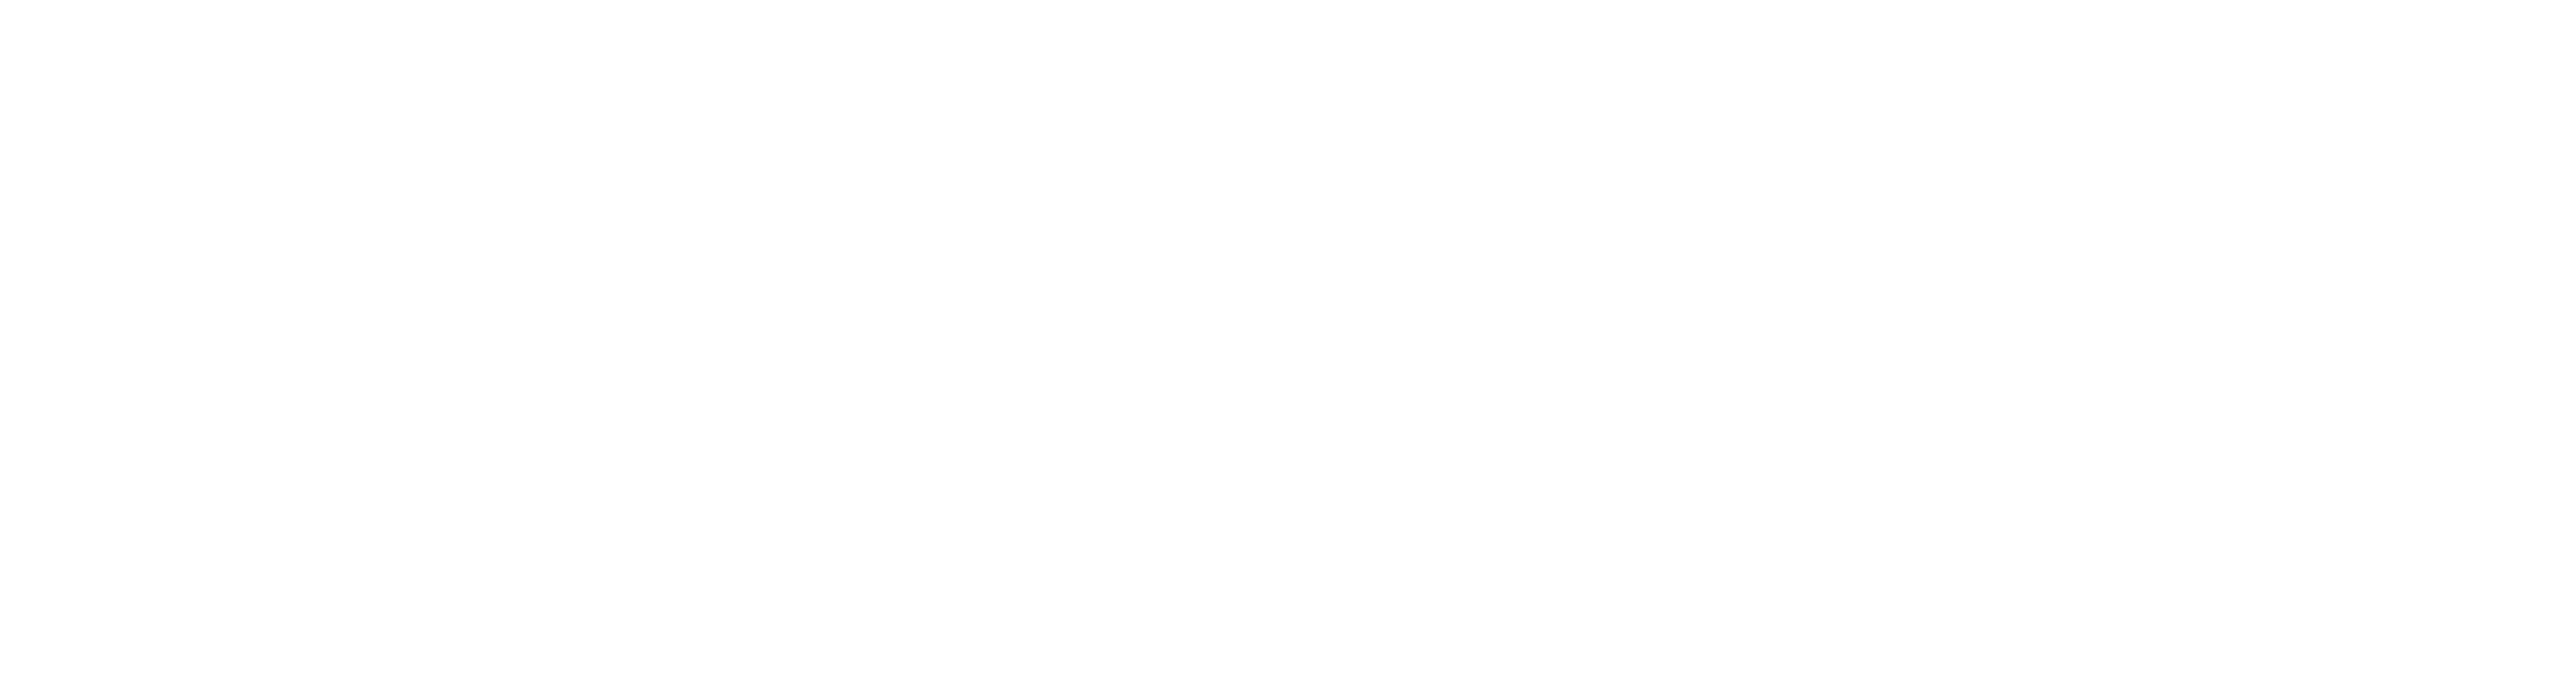 Evga logo white